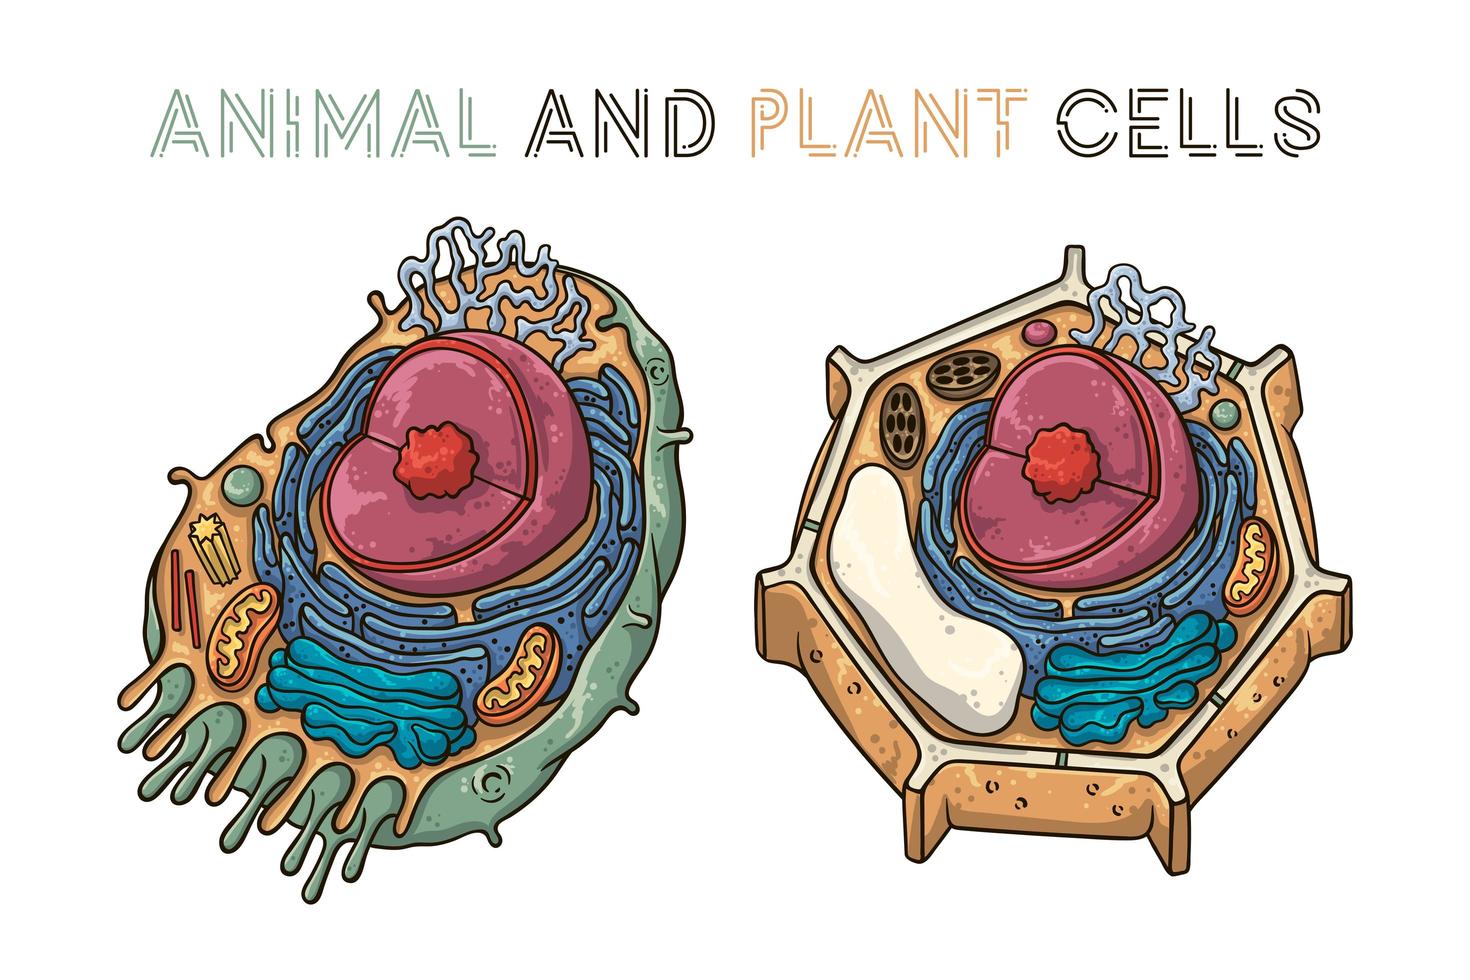 ilustrações de desenho vetorial. estrutura esquemática de células animais e vegetais. vetor